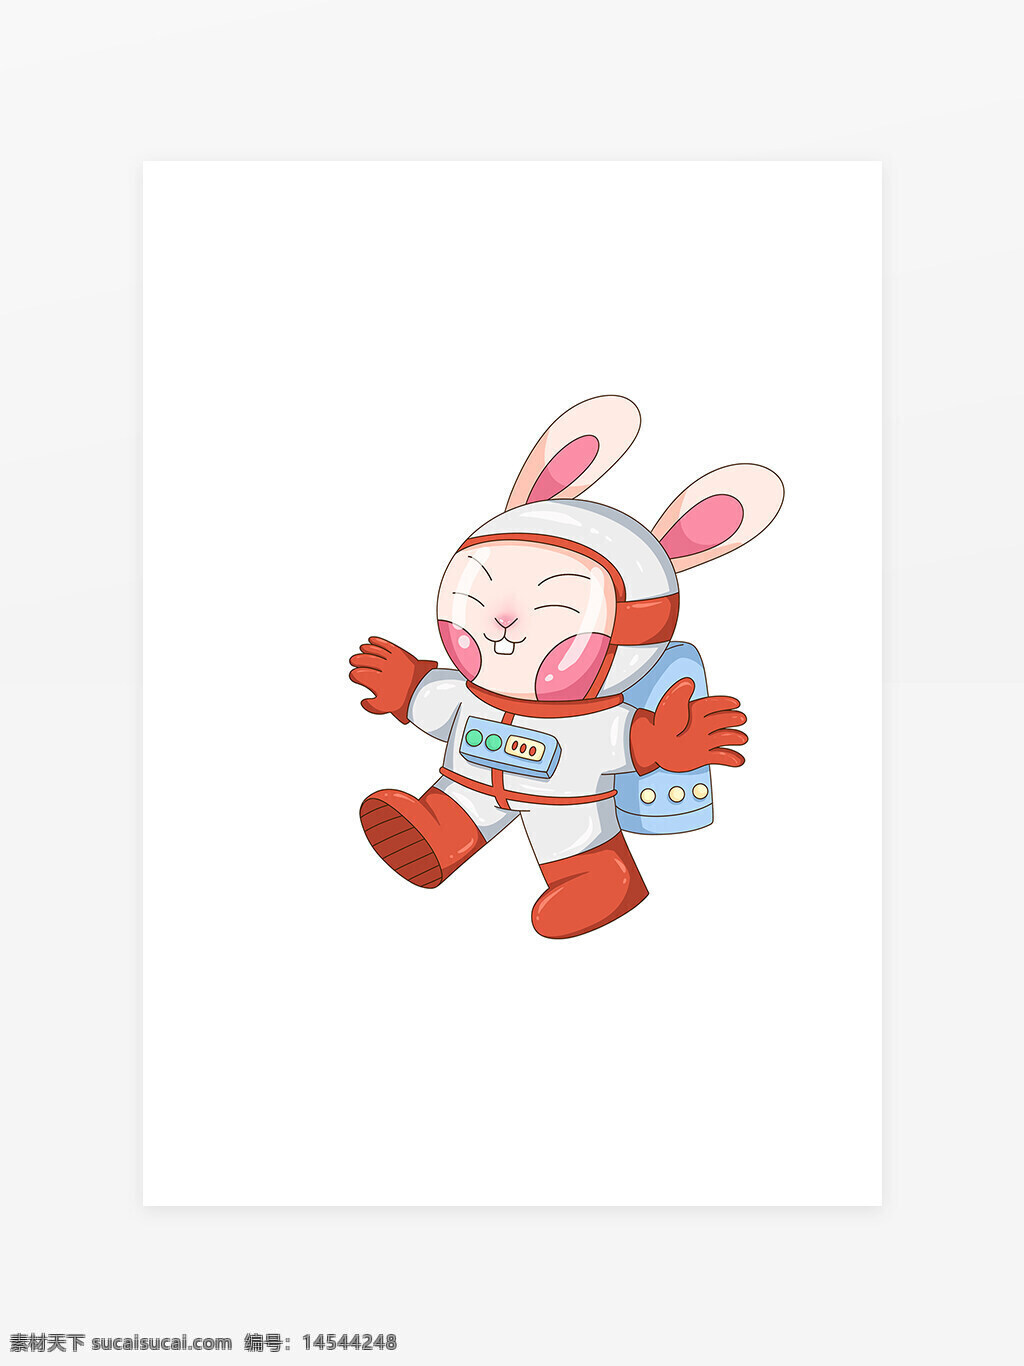 2023年兔年新年宇航员兔子 兔娃 卡通兔子 宇航员 动物拟人 太空兔子